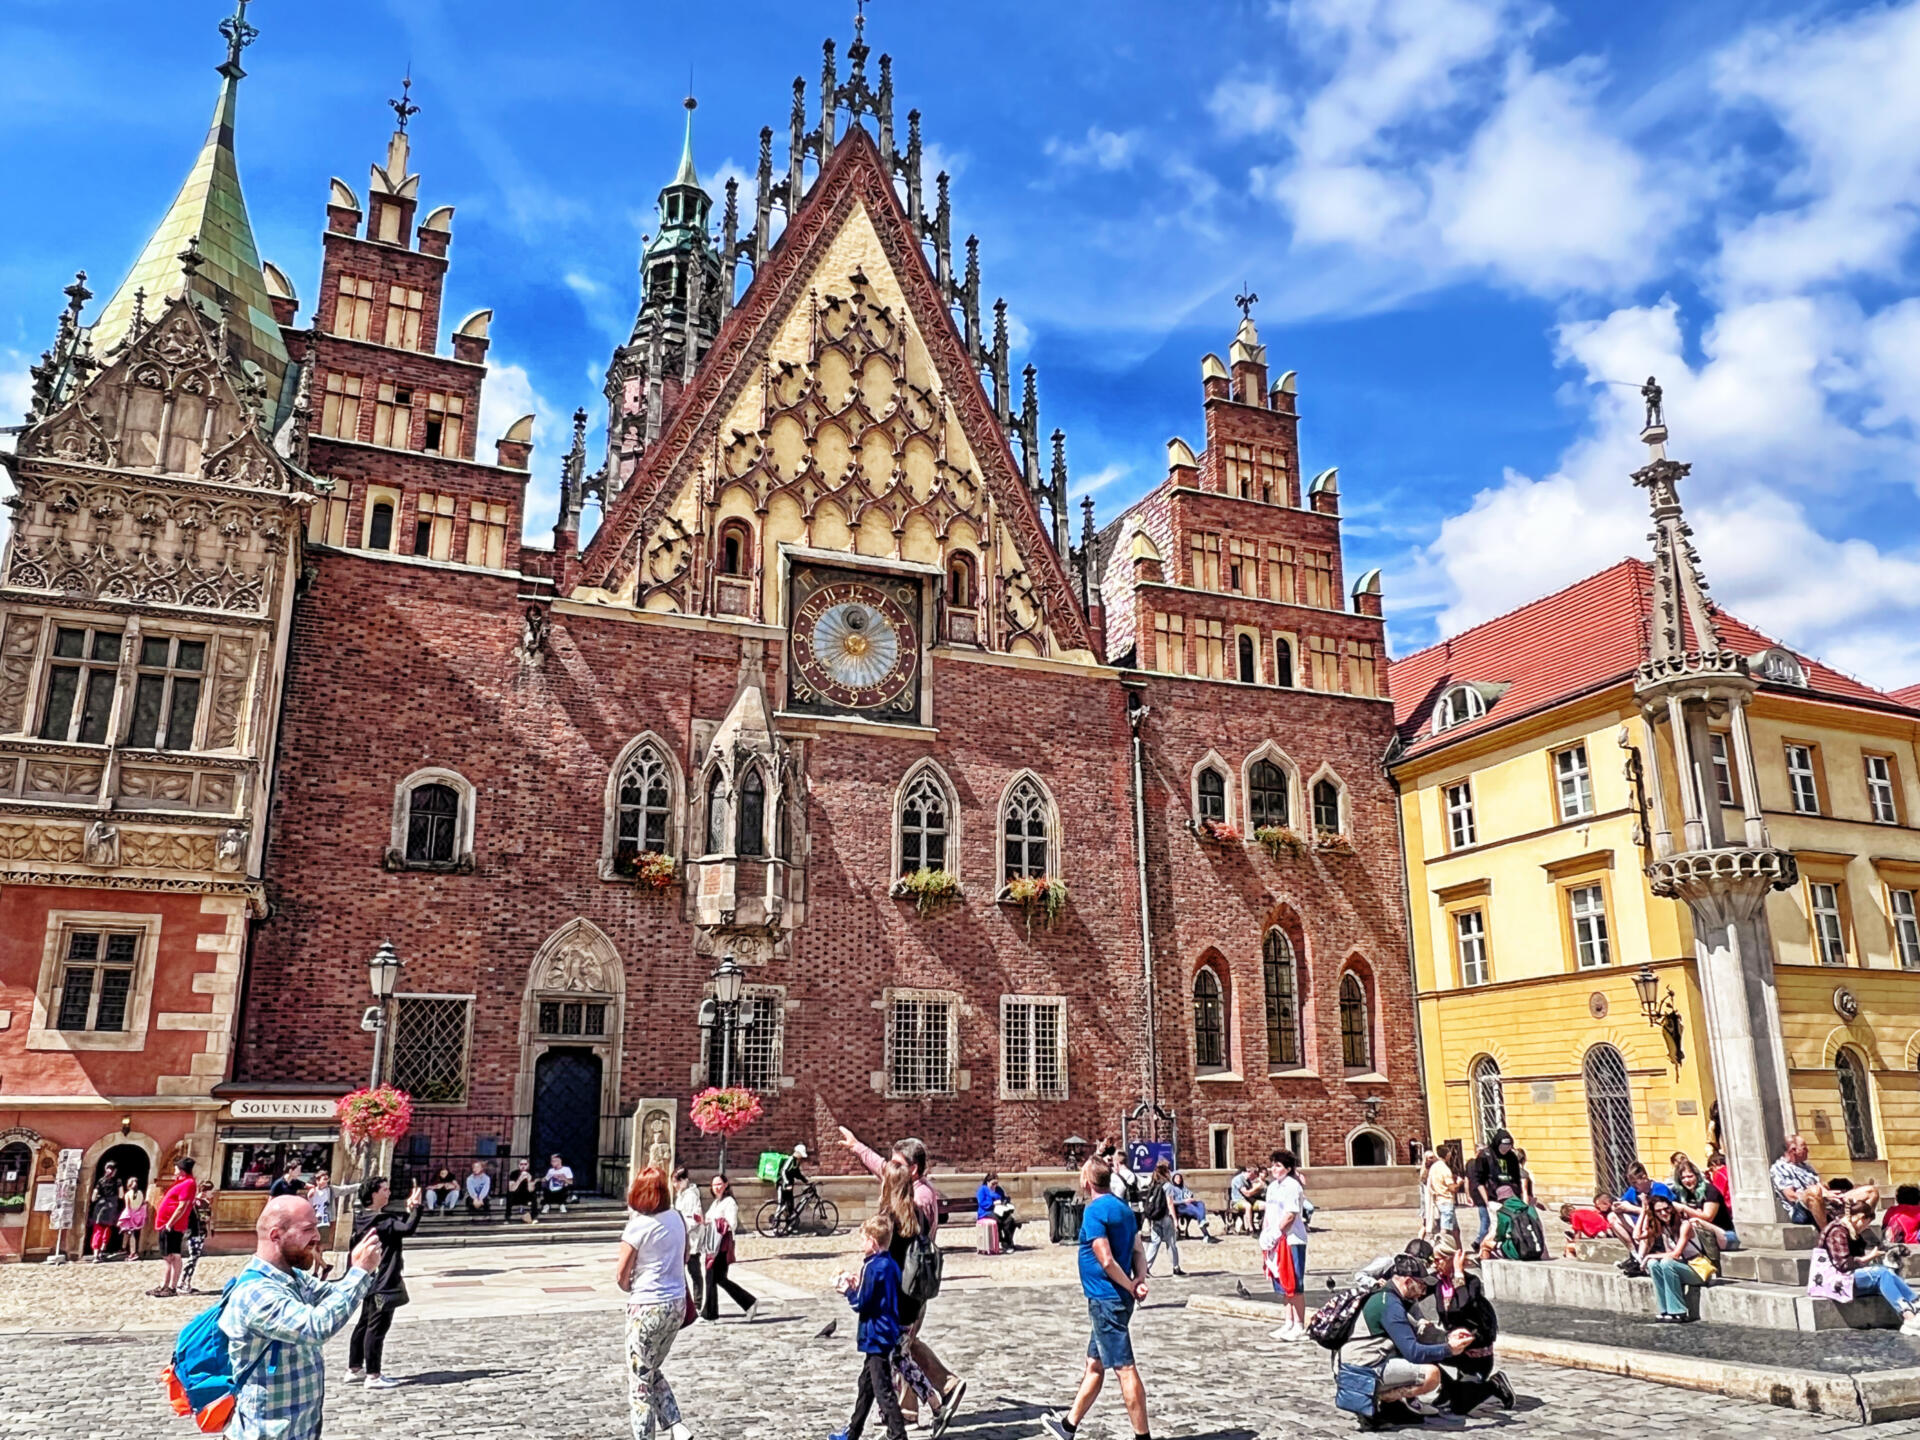 Fahren Sie mit auf eine Rundreise durch Südpolen und entdecken Sie zwei der schönsten Städte Polens! Die königliche Residenzstadt Breslau bezaubert durch ihr besonderes Flair zwischen den Oder- Inseln mit prachtvollen Häuserfassaden und mächtigen, sakralen Bauten.